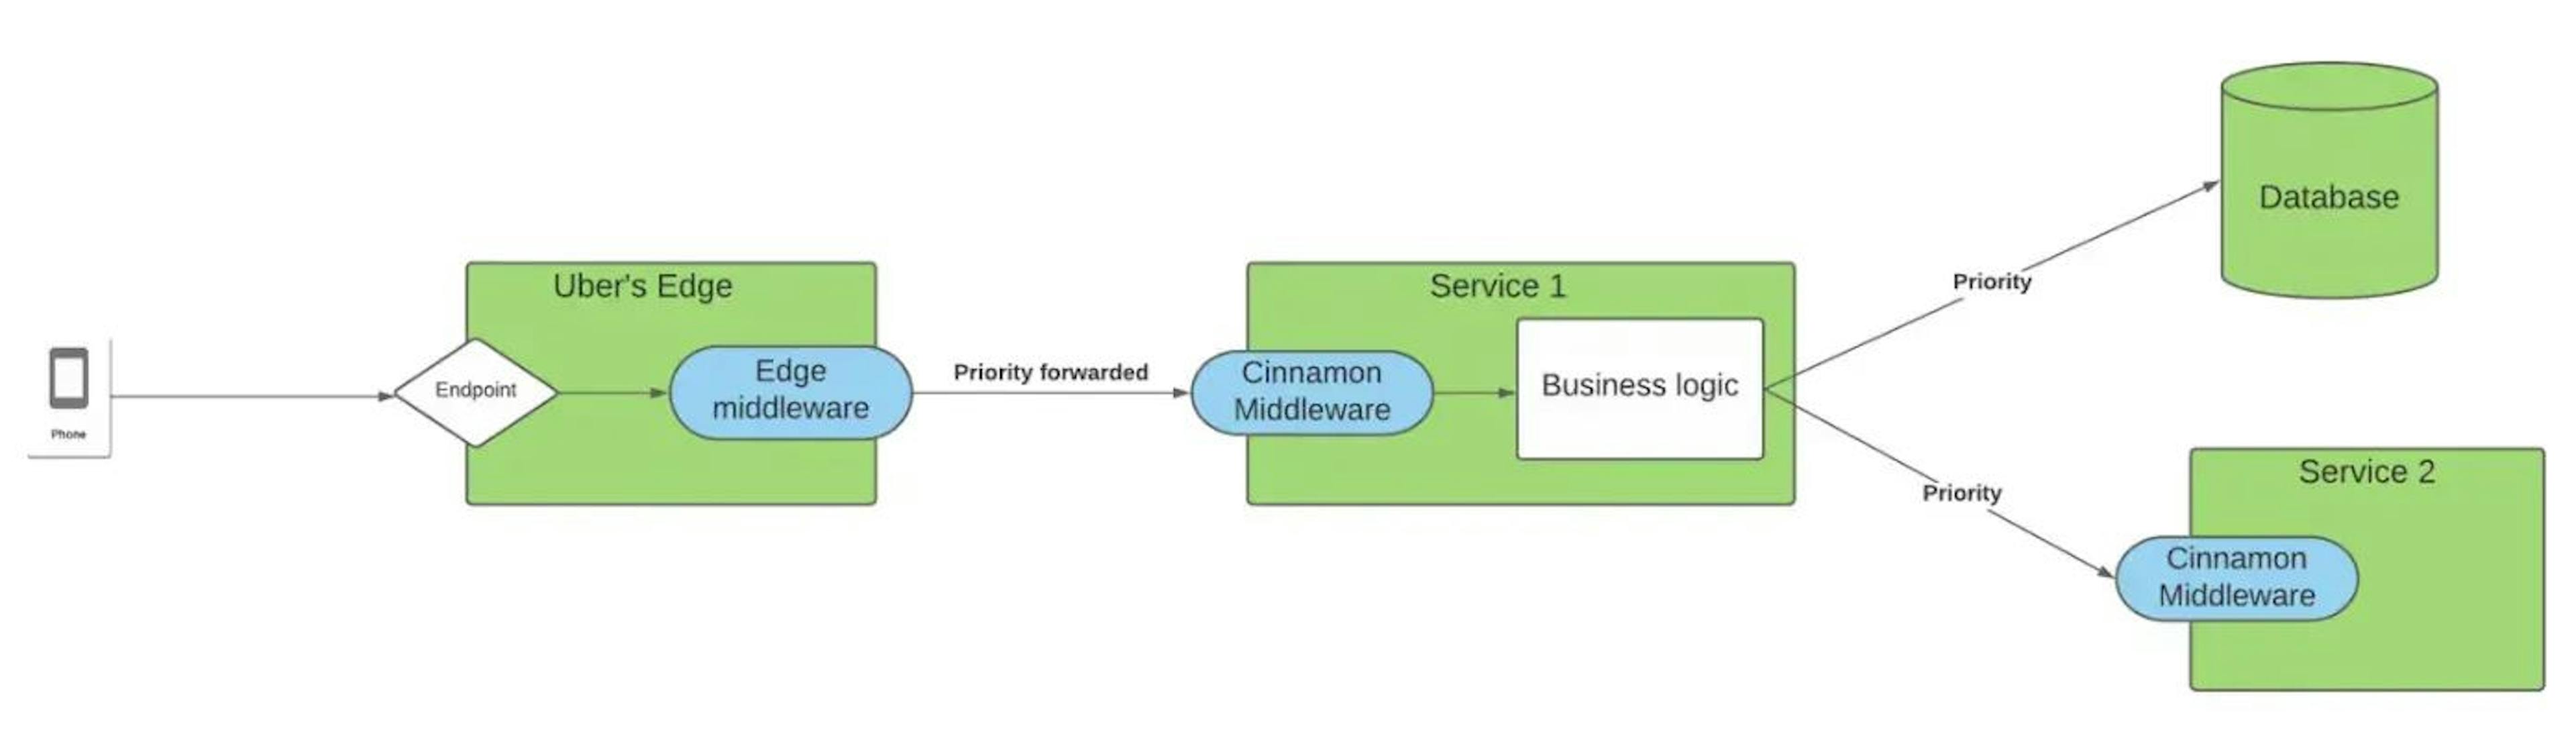 Diagrama de cómo Cinnamon encaja en la red de servicios de Uber. (del artículo de Uber mencionado anteriormente).